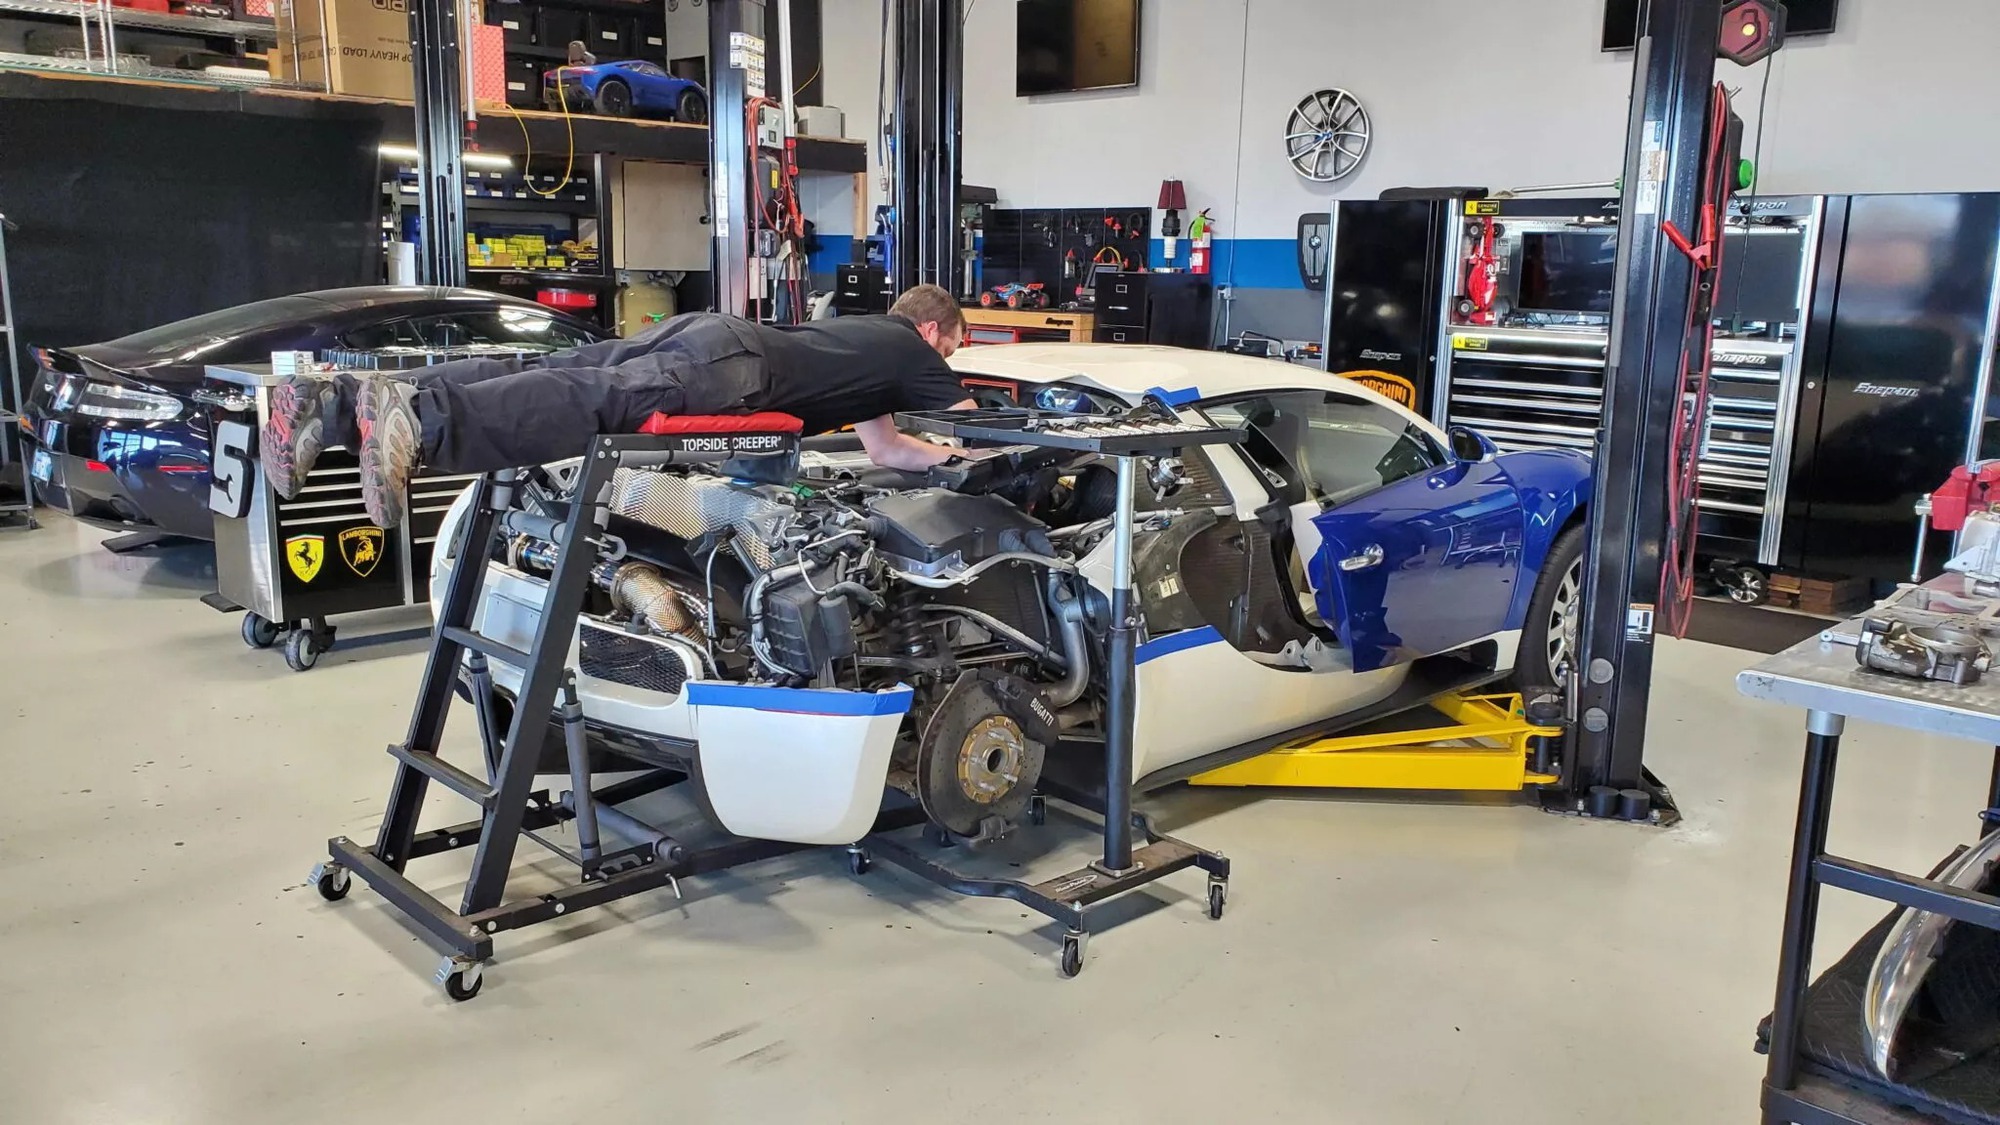 Thay bugi, bôbin Bugatti Veyron mất nhẹ nhàng 2 ngày, 20.000 USD - Ảnh 4.